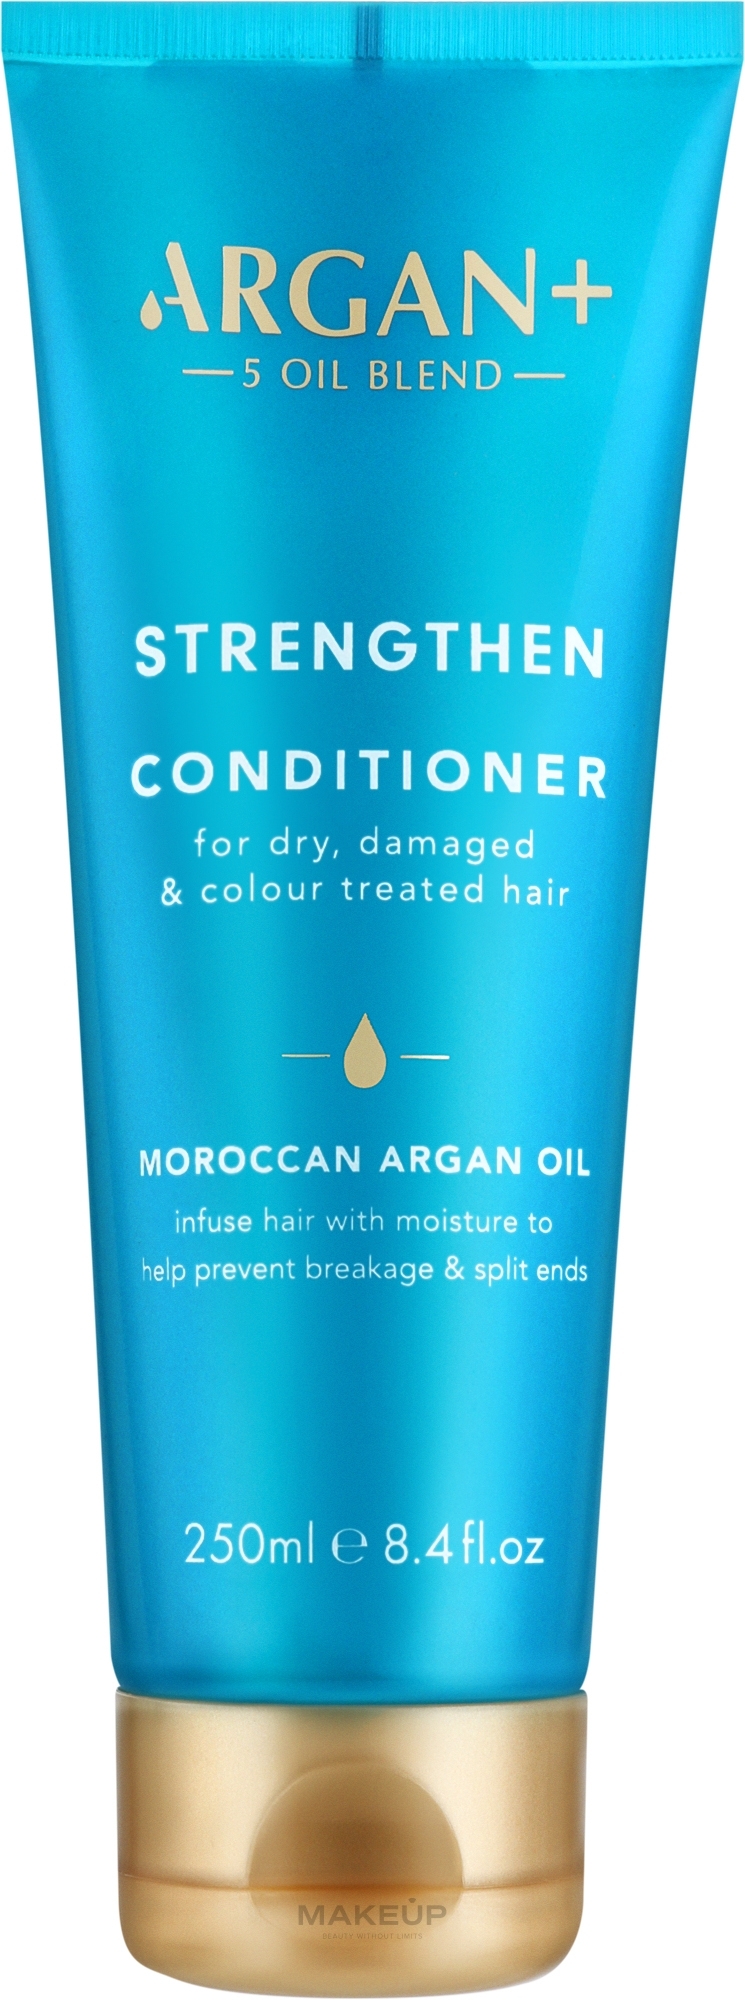 Conditioner für trockenes, geschädigtes und gefärbtes Haar mit Arganöl - Argan+ Strengthen Conditioner Morocco Argan Oil — Bild 250 ml